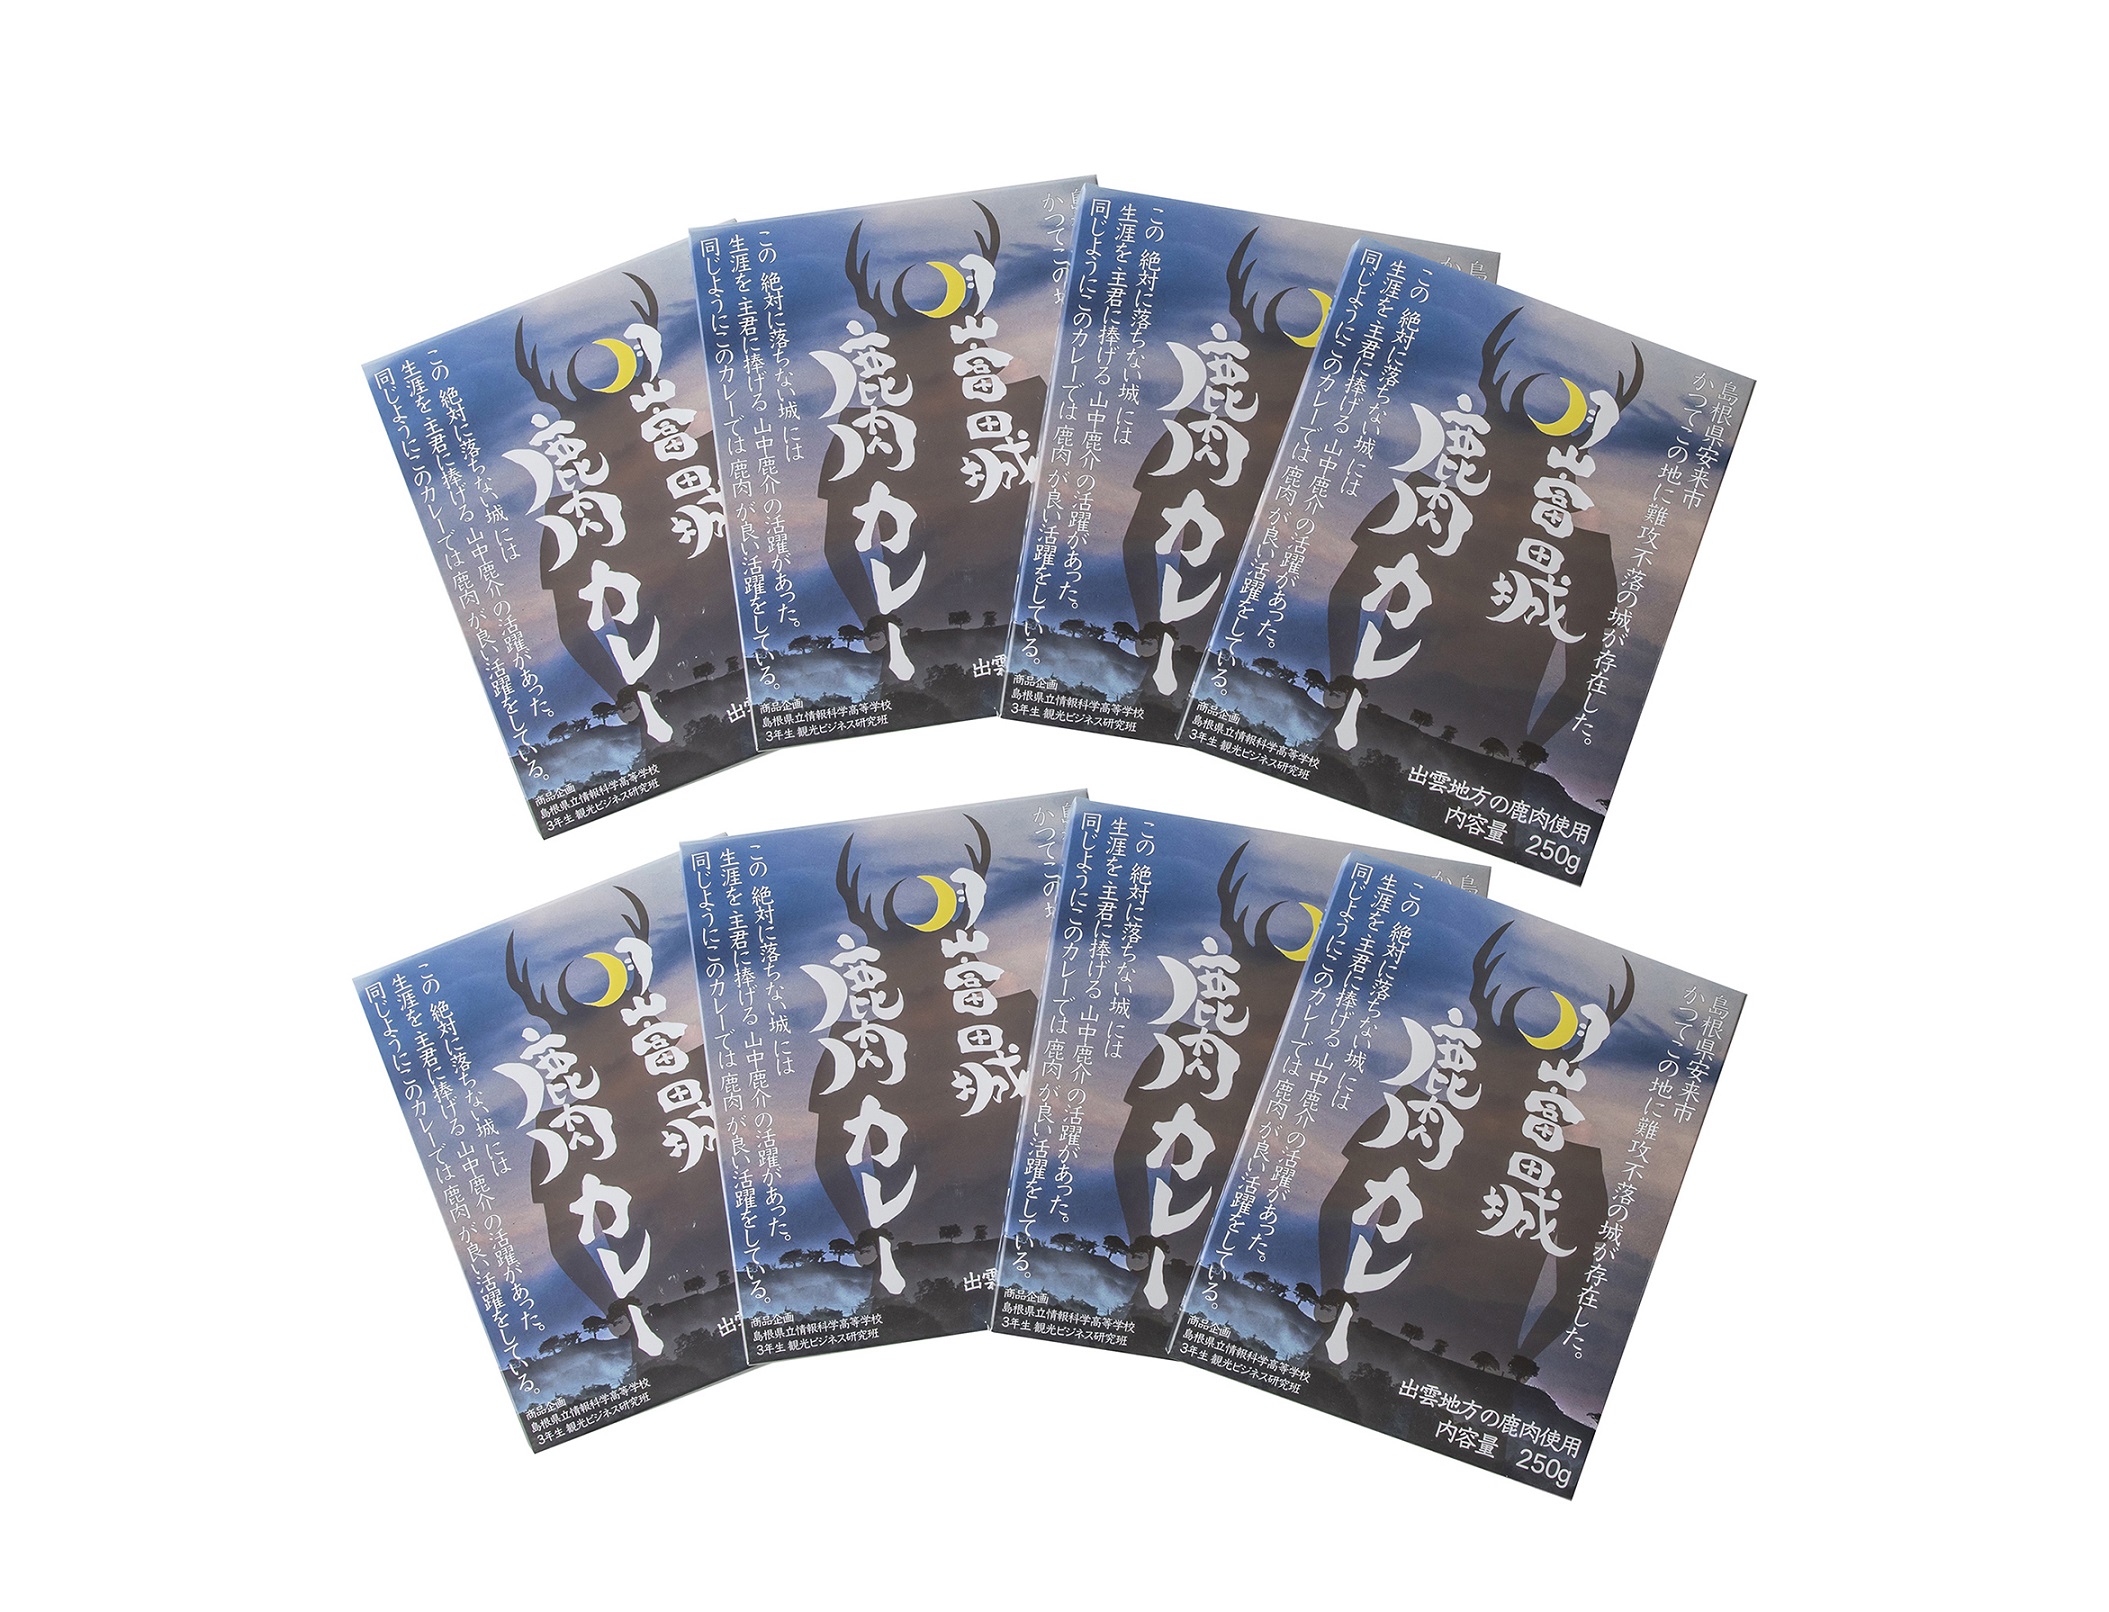 月山富田城 鹿肉カレー 8食セット